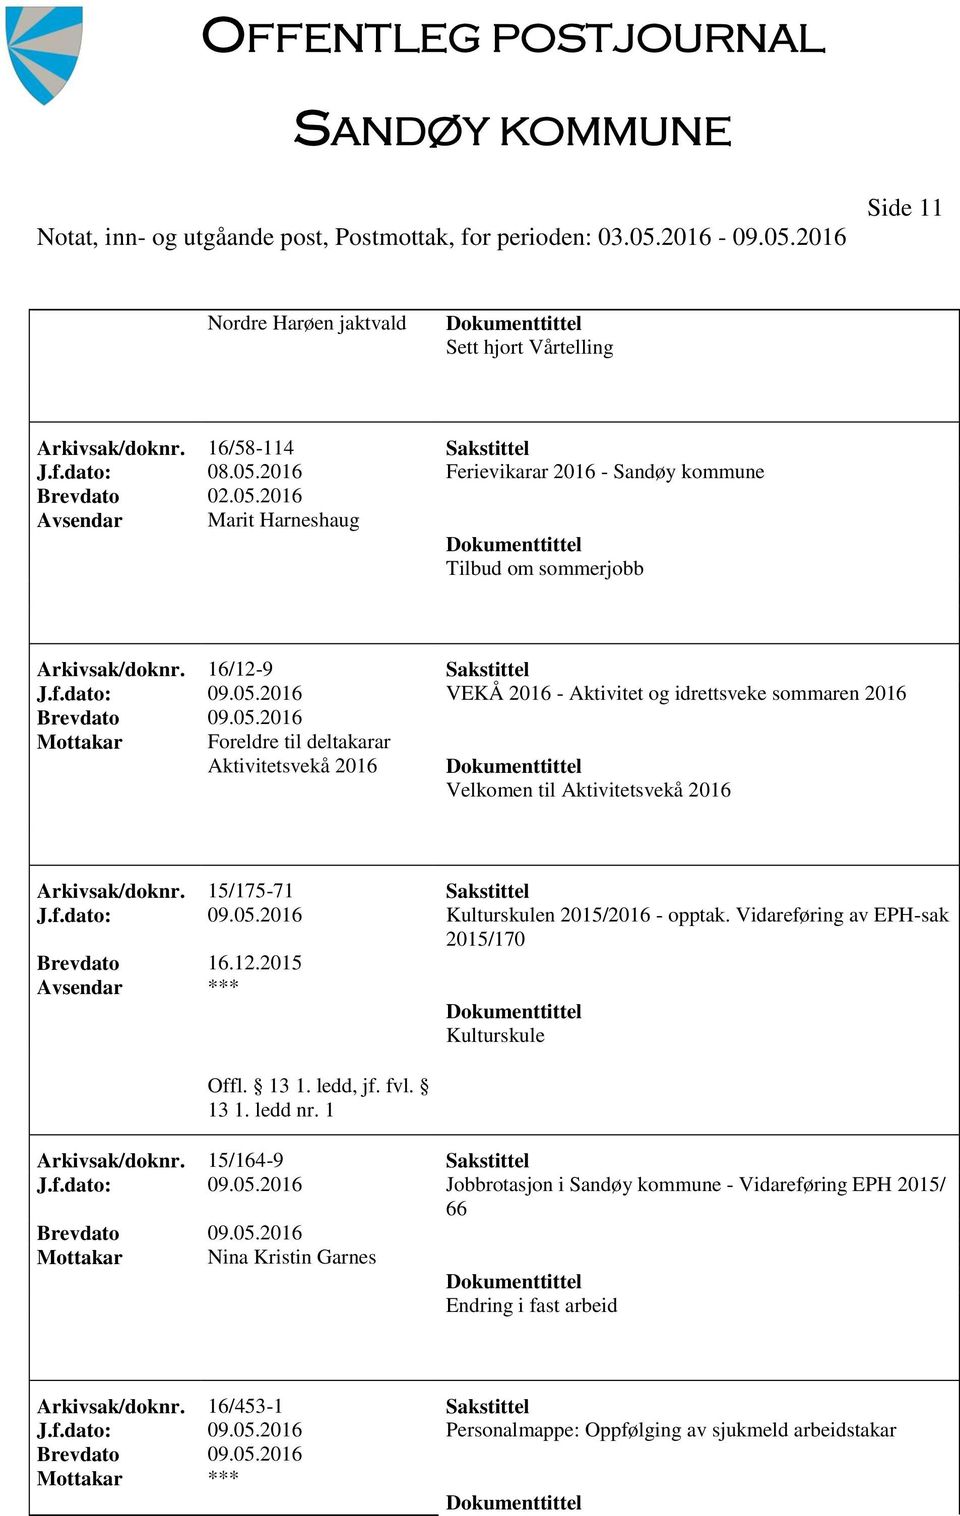 15/175-71 Sakstittel J.f.dato: 09.05.2016 Kulturskulen 2015/2016 - opptak. Vidareføring av EPH-sak Brevdato 16.12.2015 *** Kulturskule Arkivsak/doknr. 15/164-9 Sakstittel J.f.dato: 09.05.2016 Jobbrotasjon i Sandøy kommune - Vidareføring EPH 2015/ 66 Mottakar Nina Kristin Garnes Endring i fast arbeid Arkivsak/doknr.